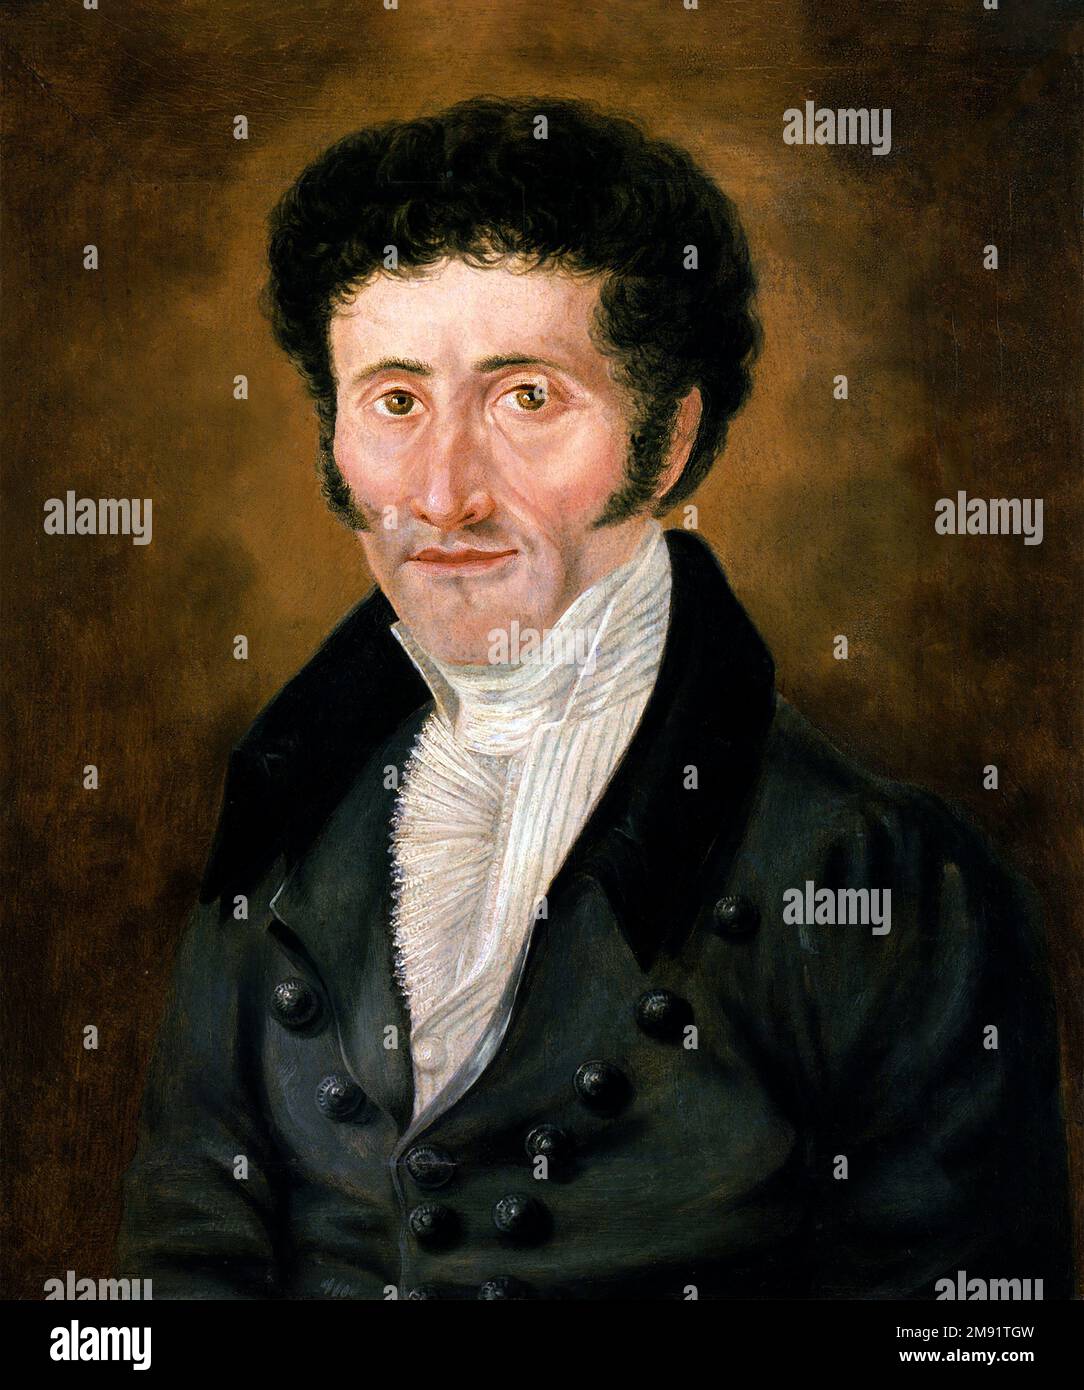 E T A HOFFMANN. Portrait de l'écrivain d'horreur gothique allemand Ernst Theodor Amadeus Hoffmann (1776-1822), autoportrait, huile sur toile Banque D'Images